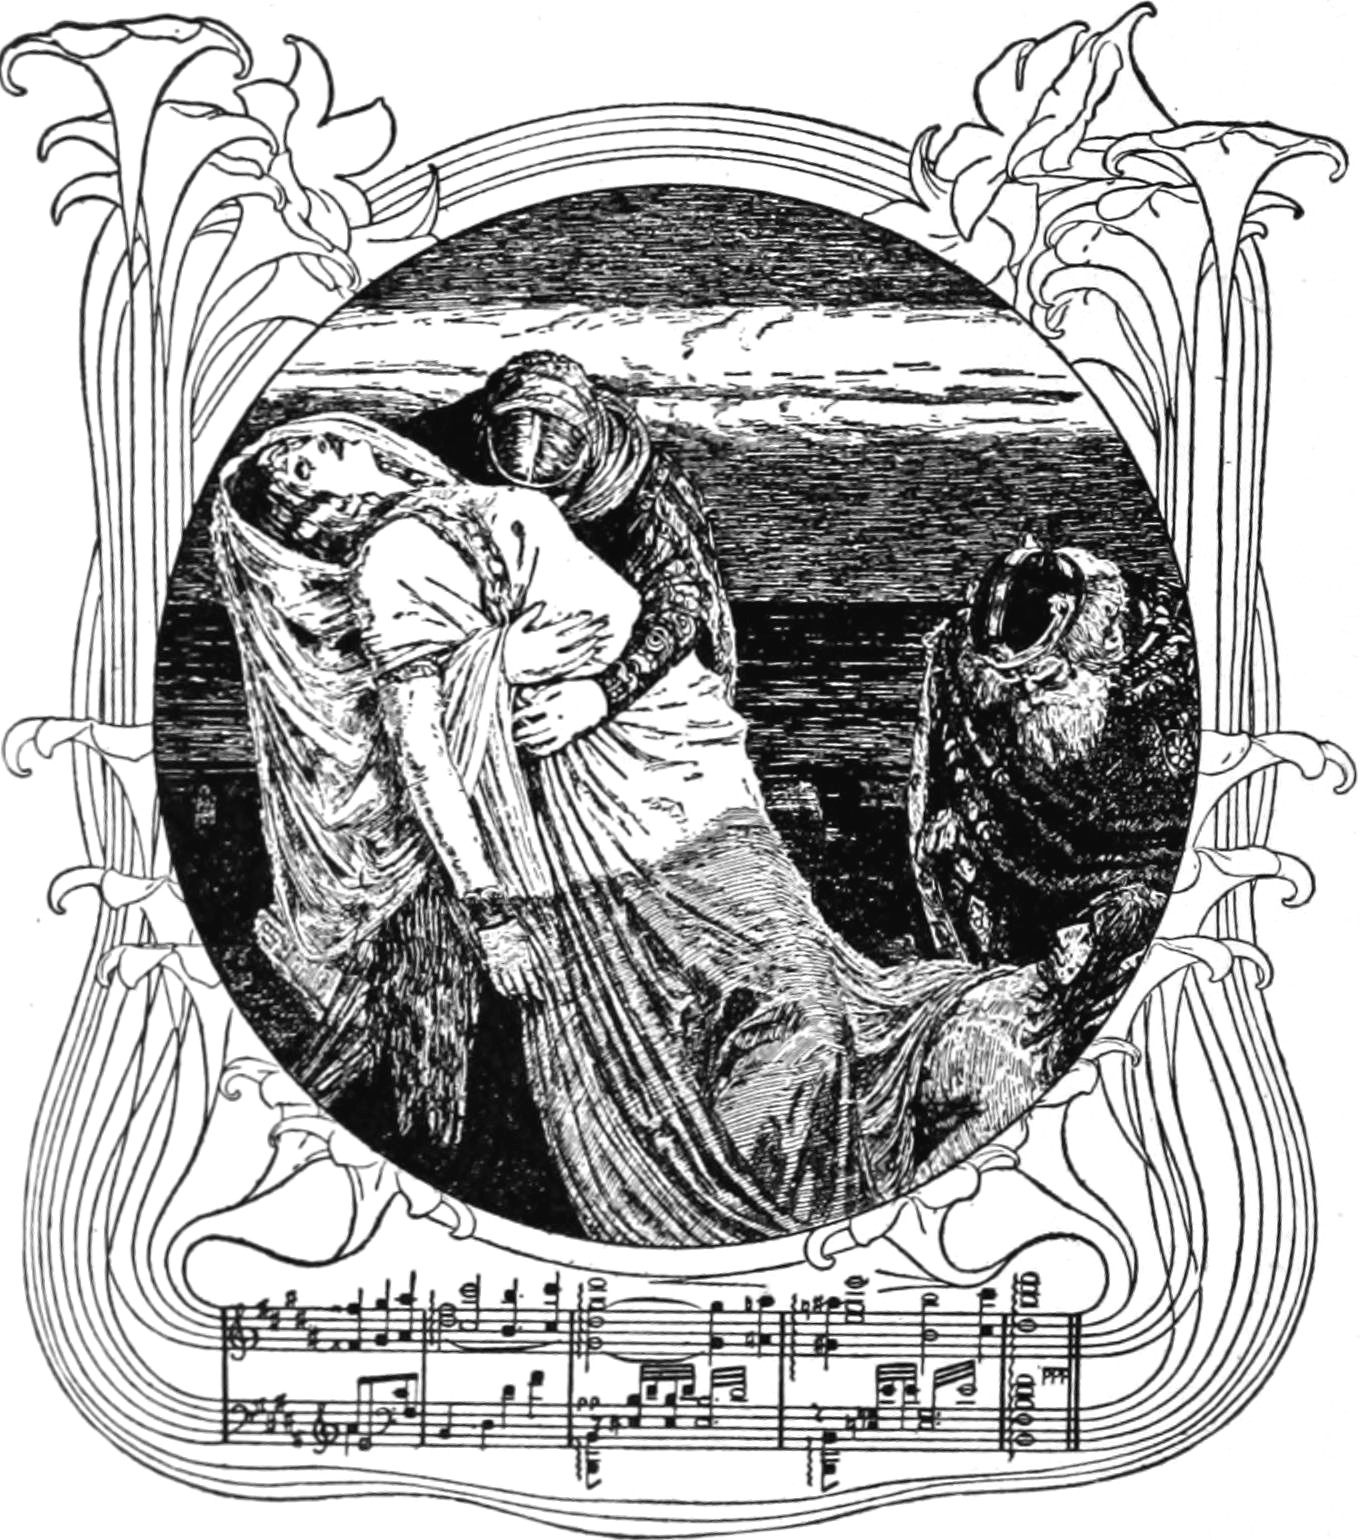 Tristan und Isolde - Wikipedia